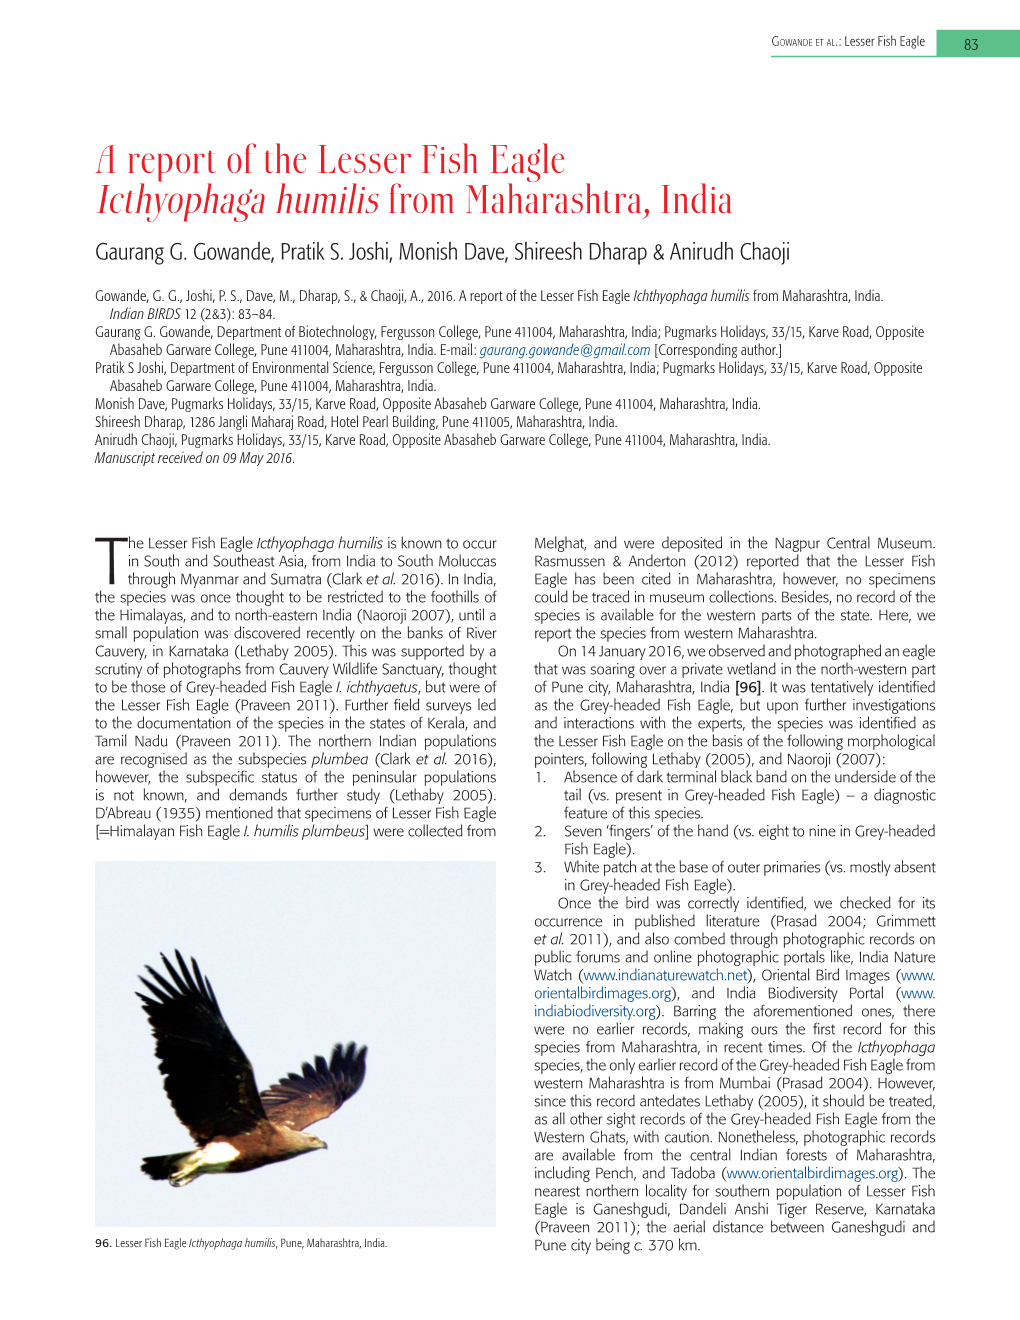 A Report of the Lesser Fish Eagle Icthyophaga Humilis from Maharashtra, India Gaurang G